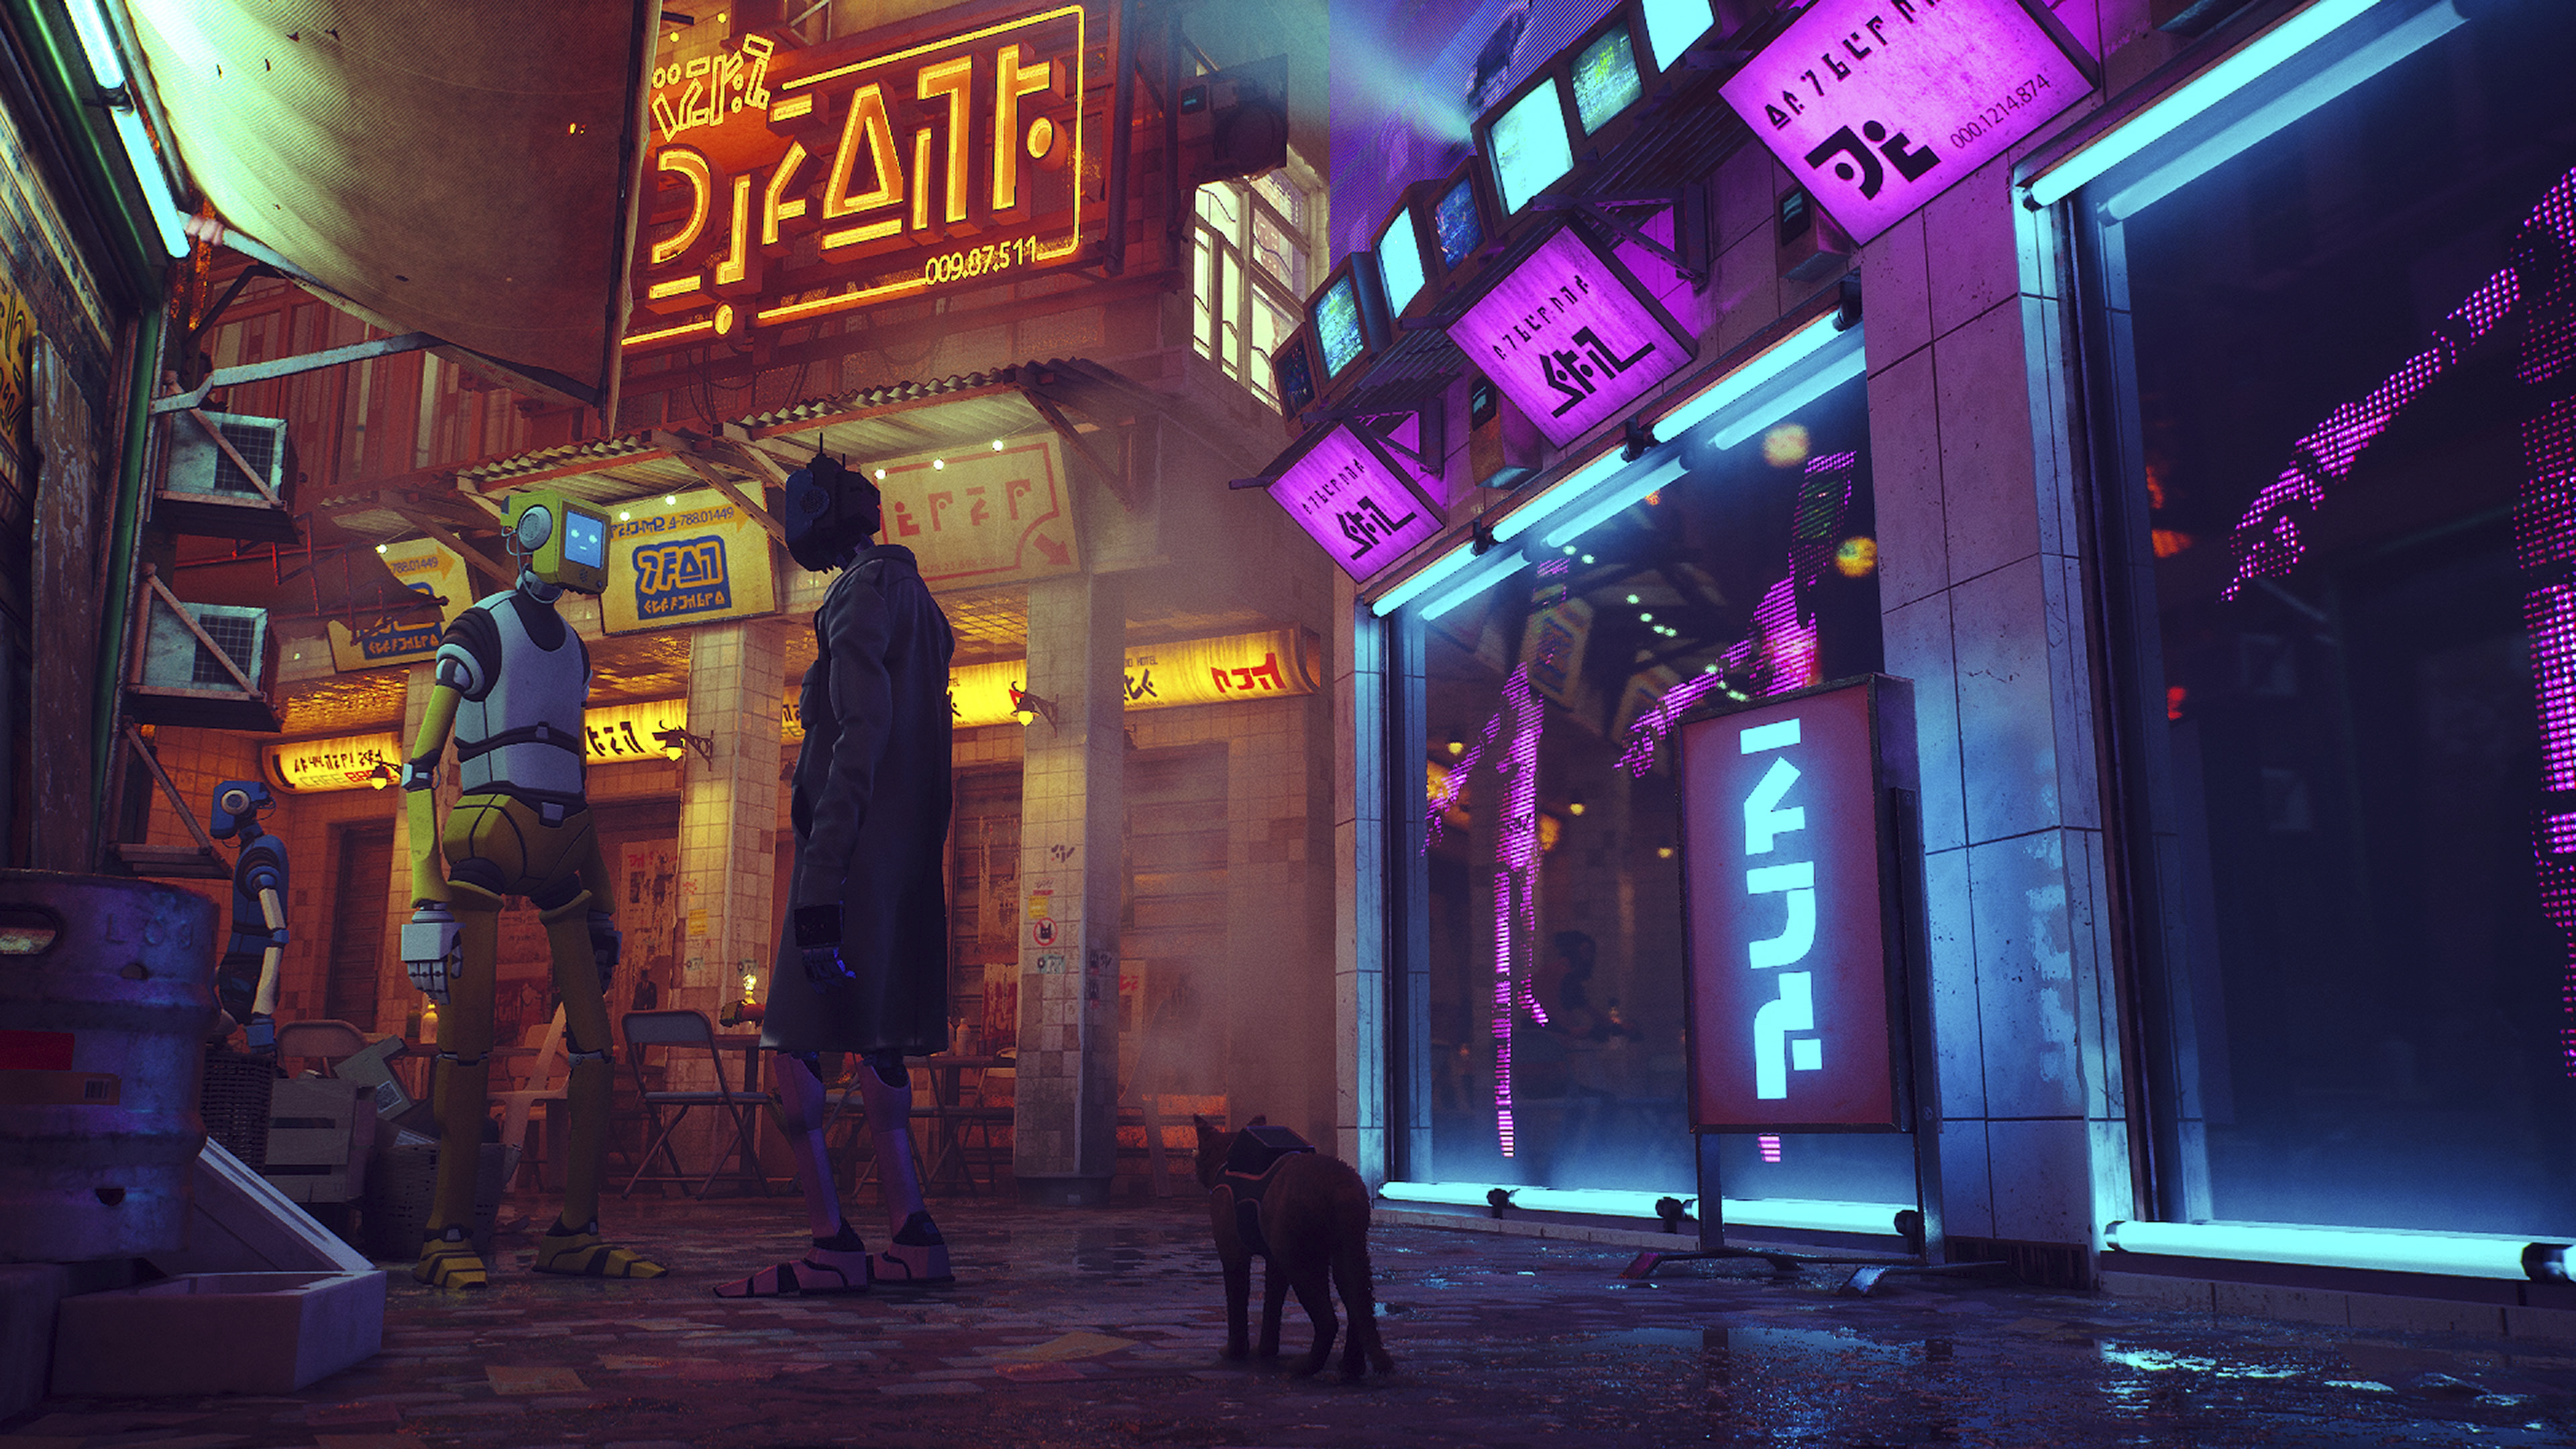 Zrzut ekranu z gry Stray, przedstawiający scenerię uliczną, pełną neonów.